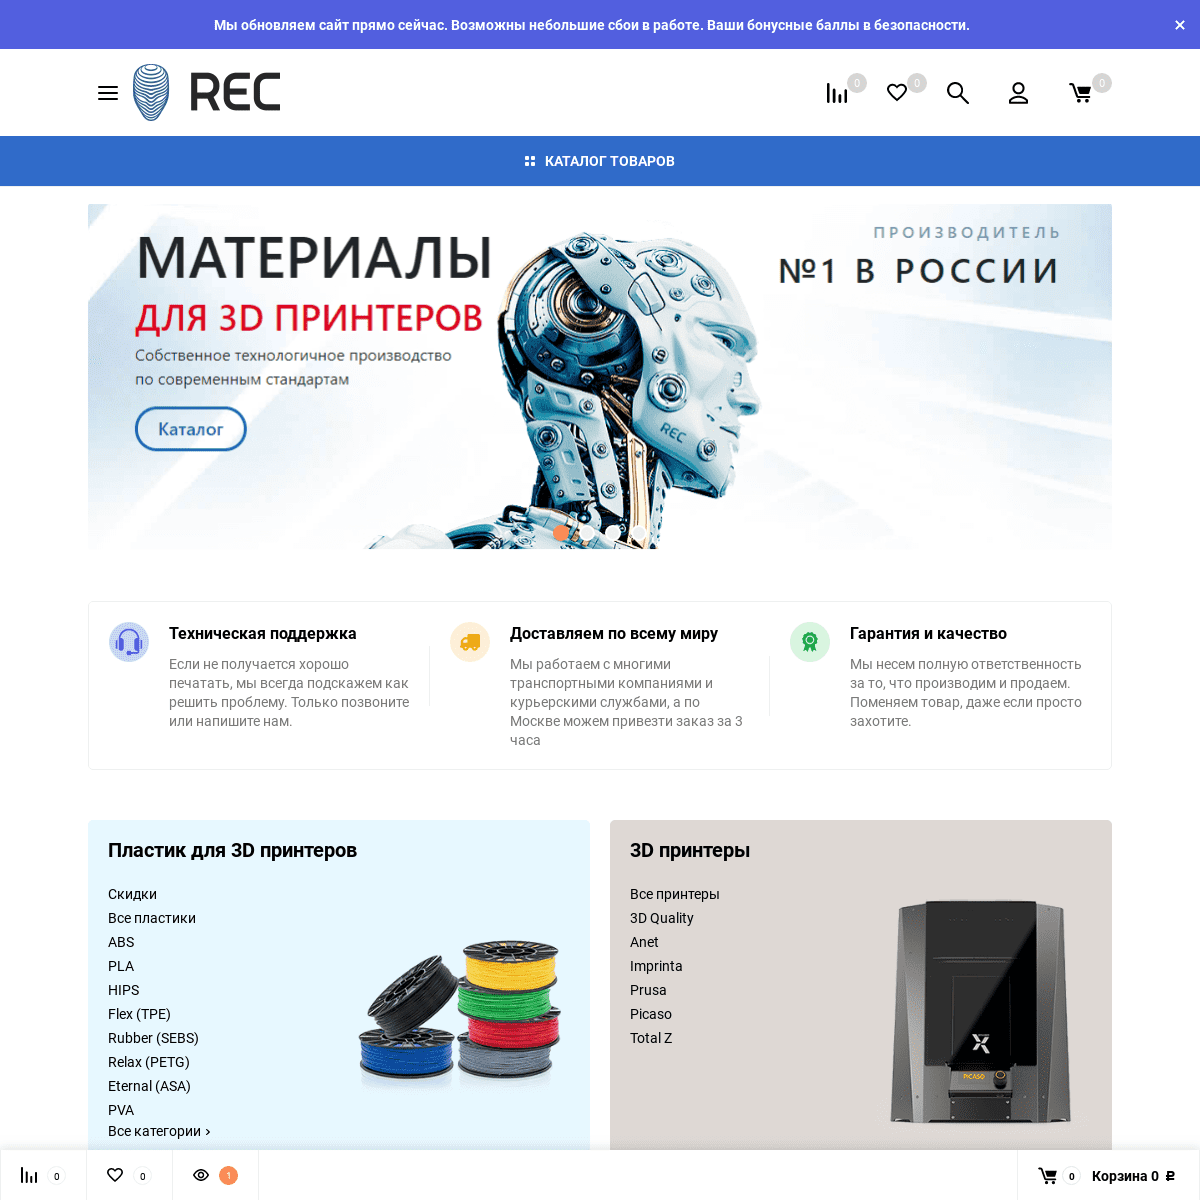 A complete backup of rec3d.ru